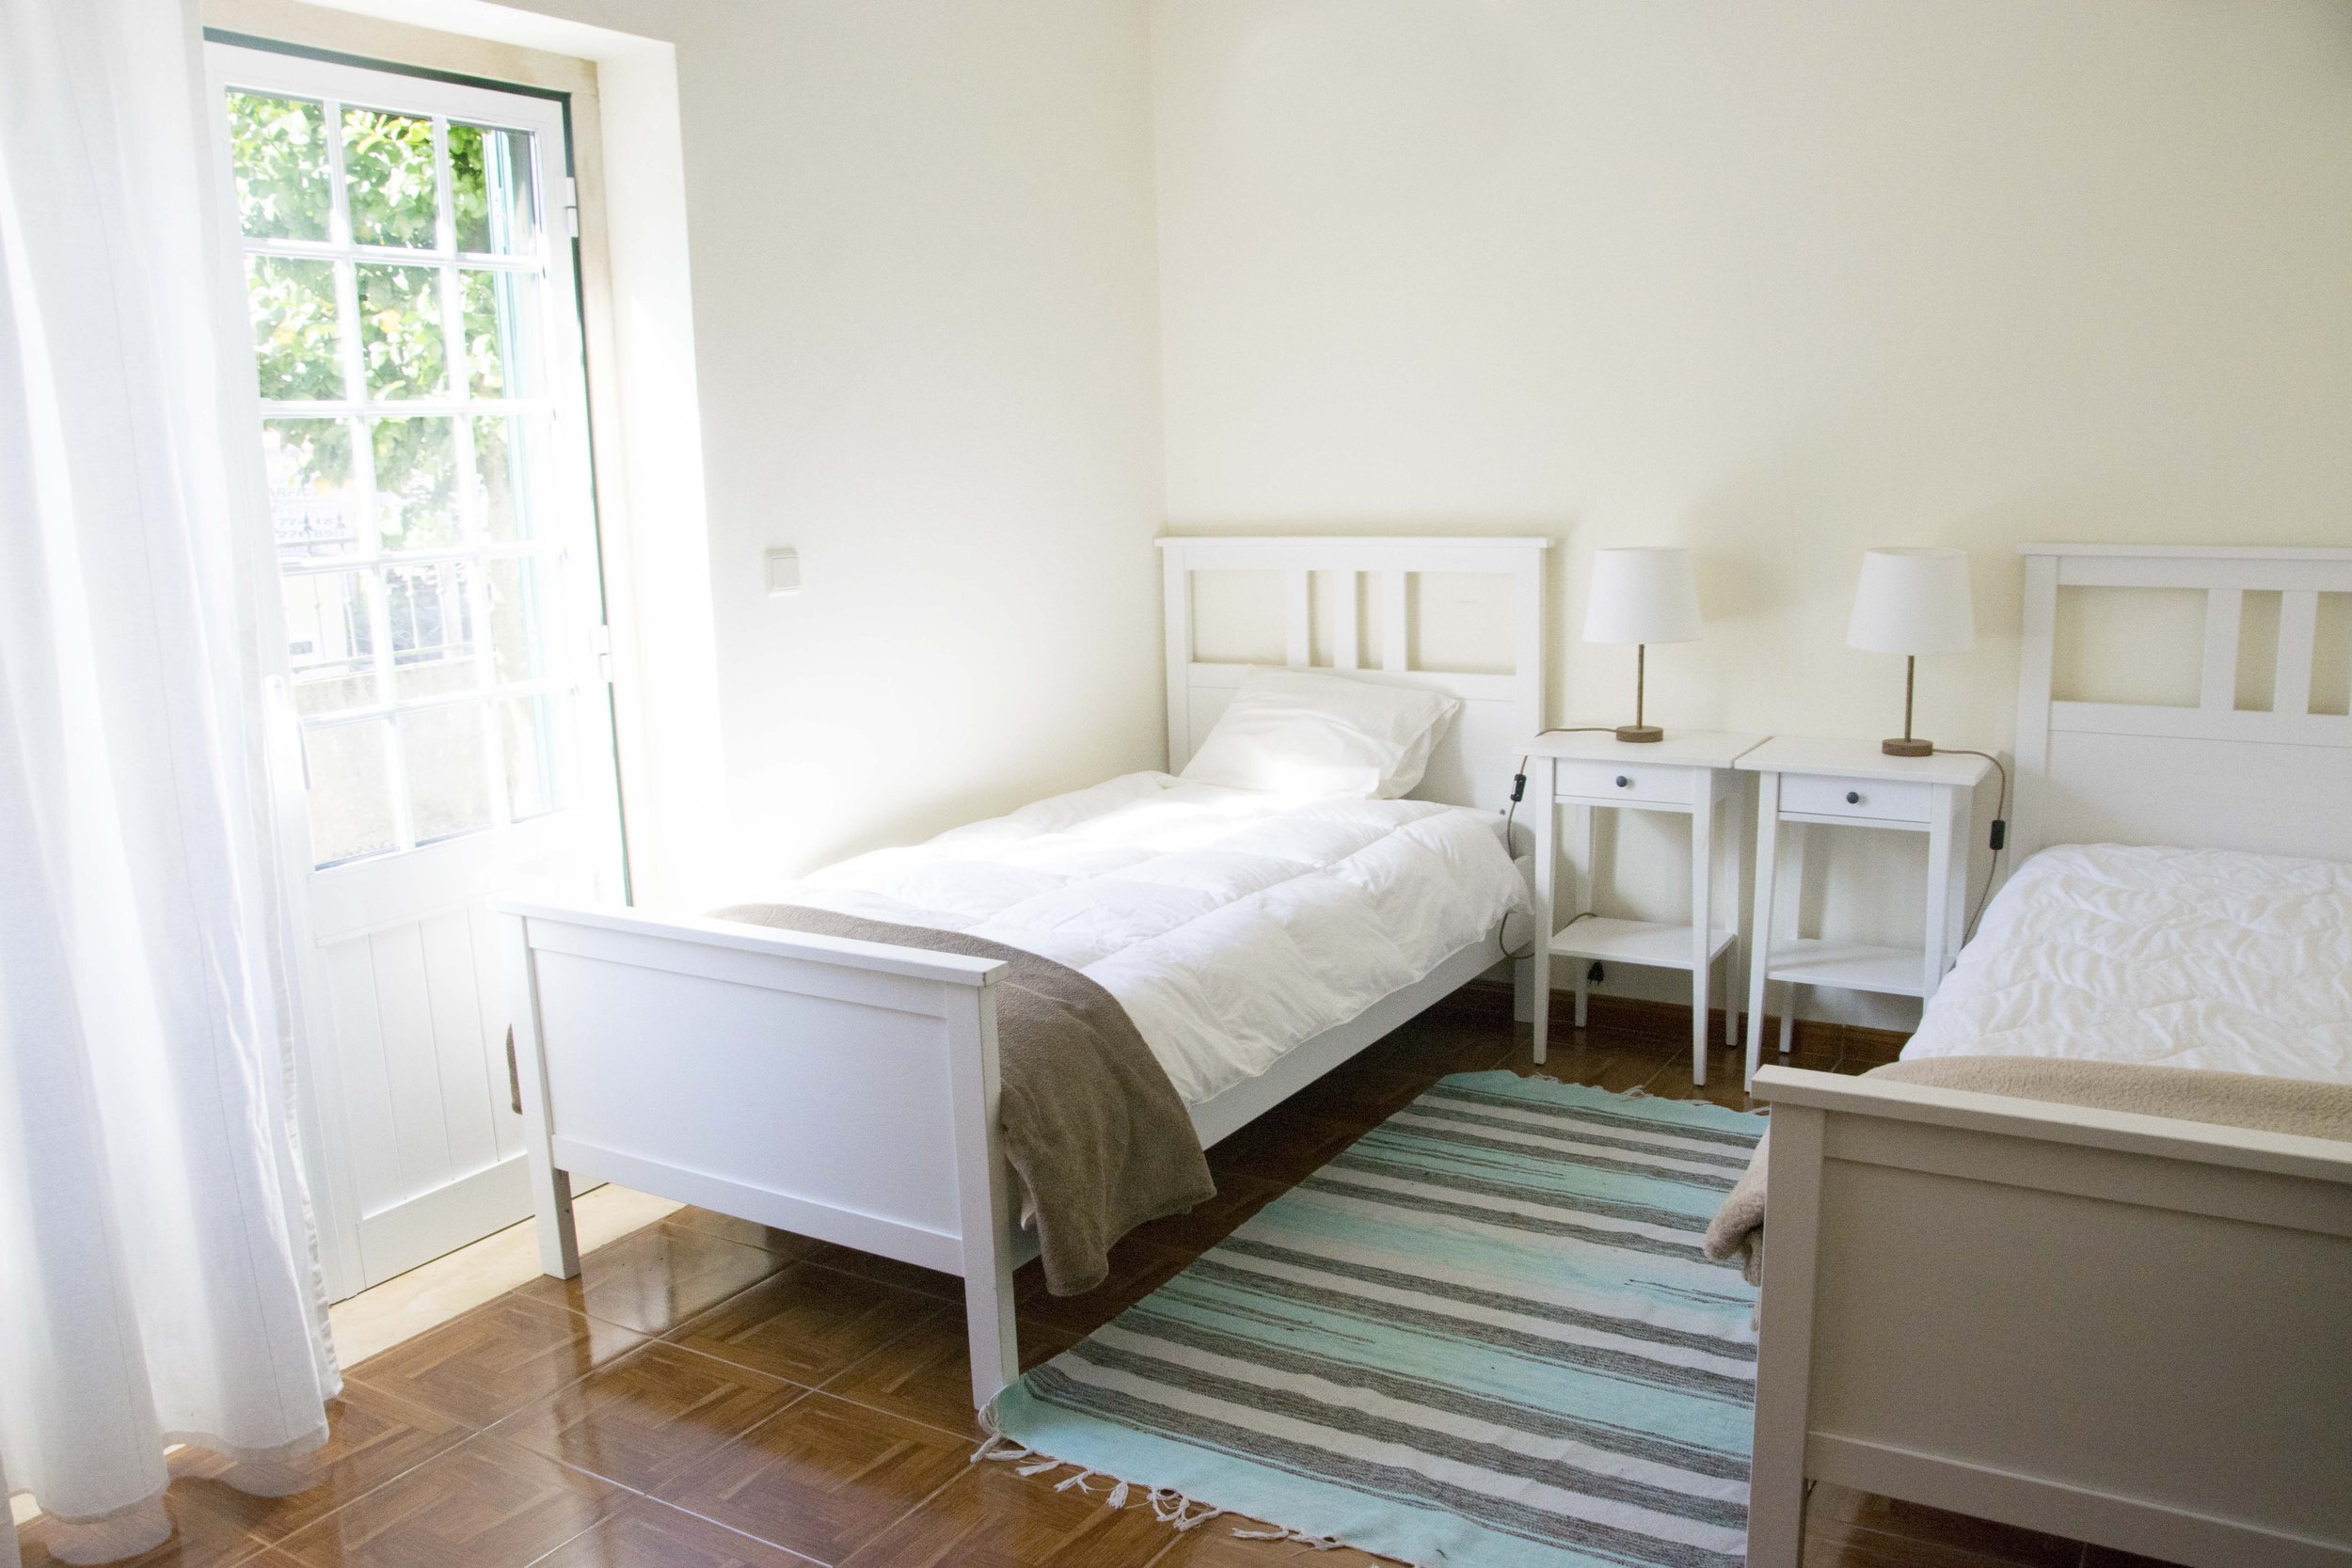 Aviario home - Double room